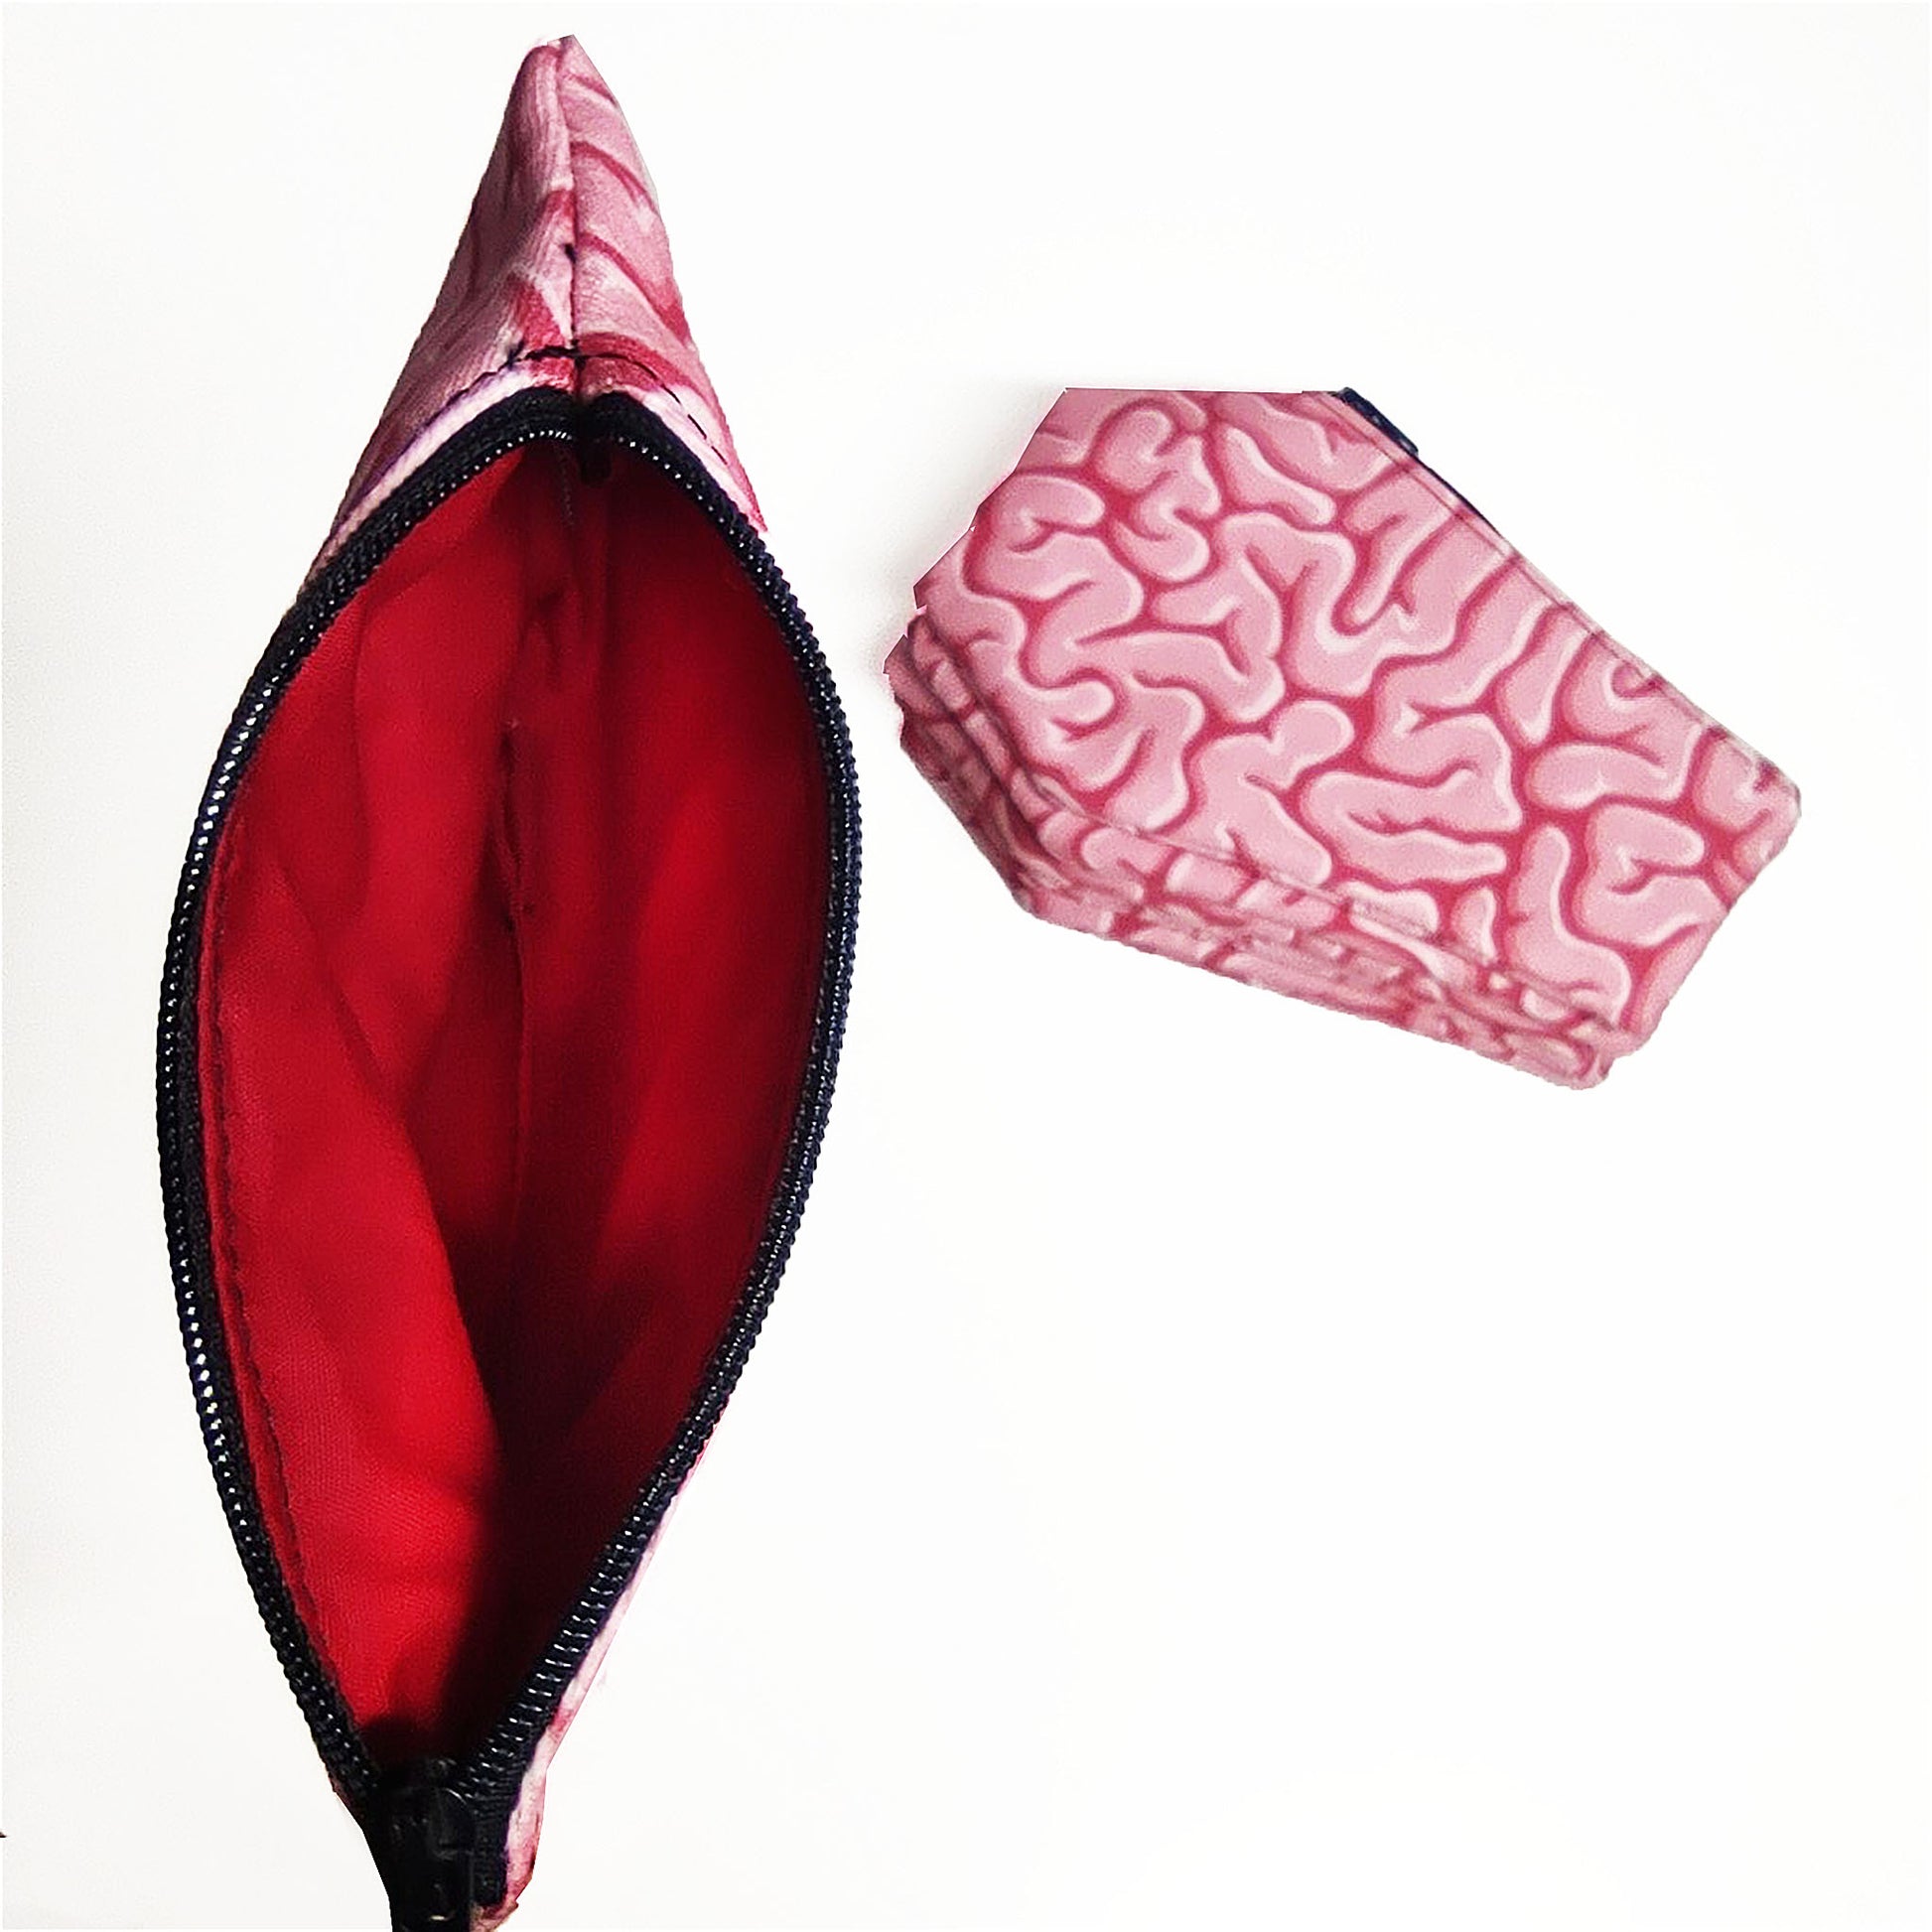 Süße kleine Tasche in Sargform aus rosa Stoff mit Zombie-Gehirn-Motiv und rotem Innenfutter.